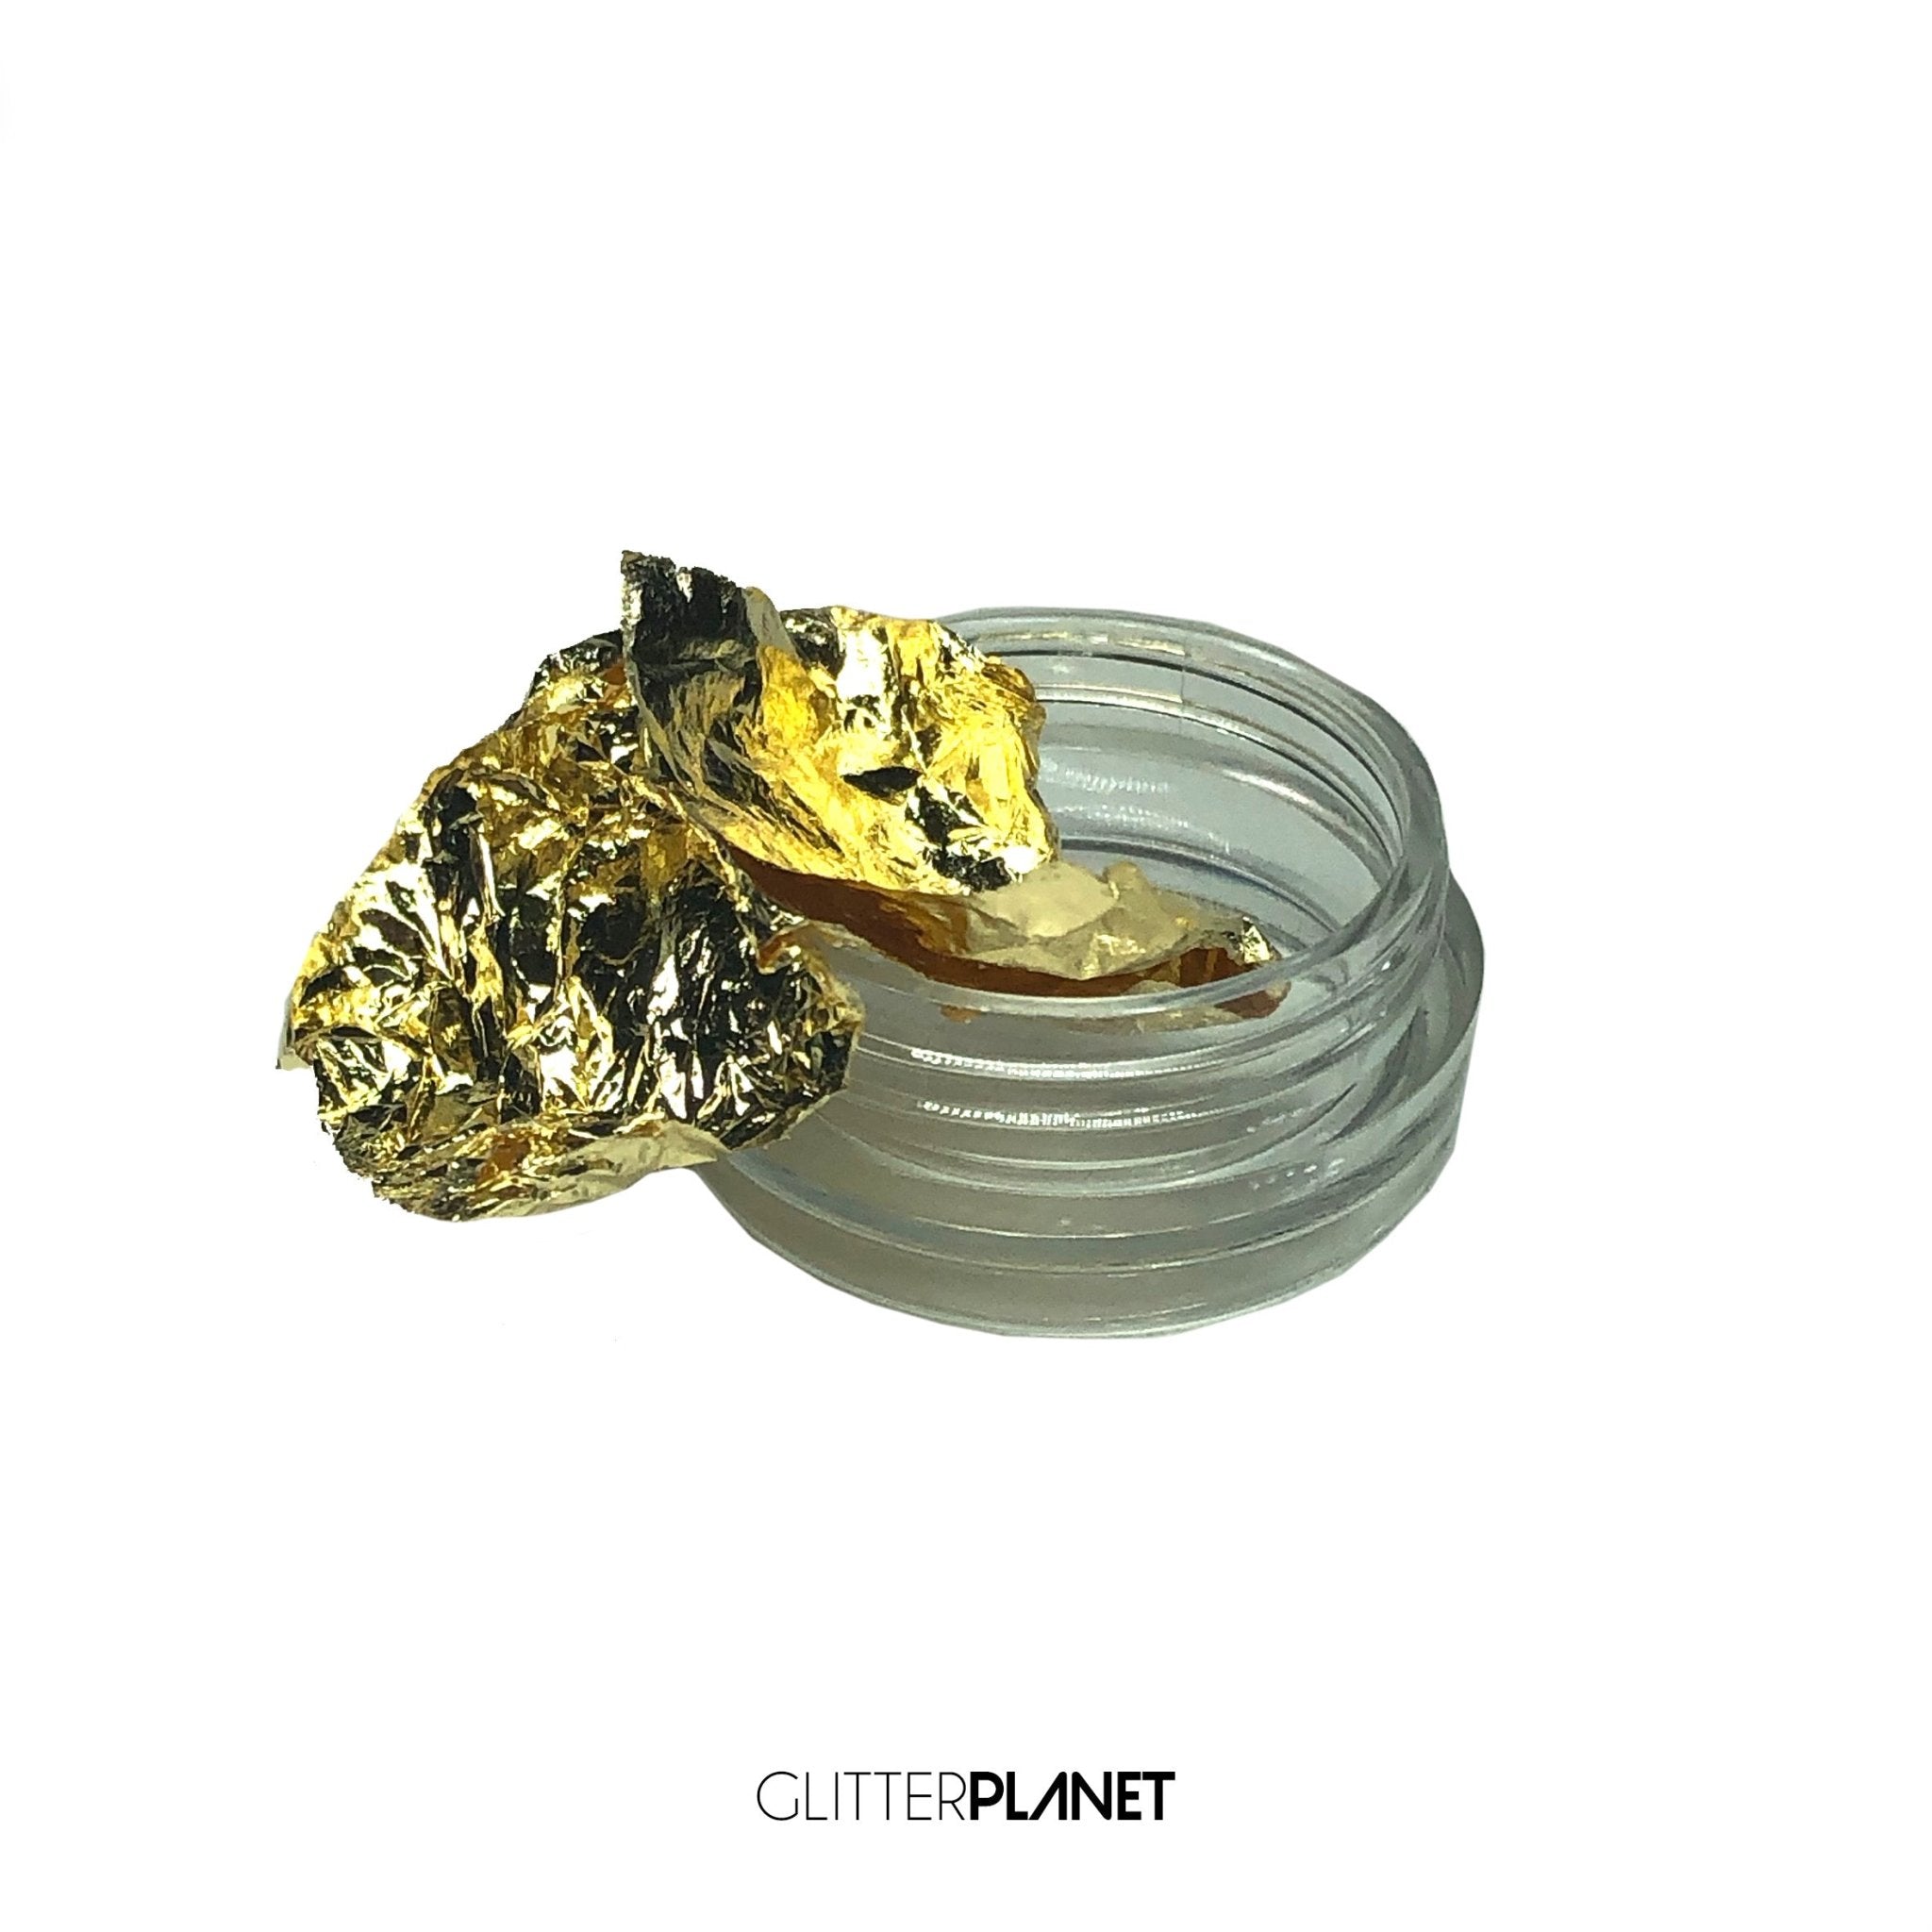 Gold Metallic Leaf Foil for Nails, The GelBottle